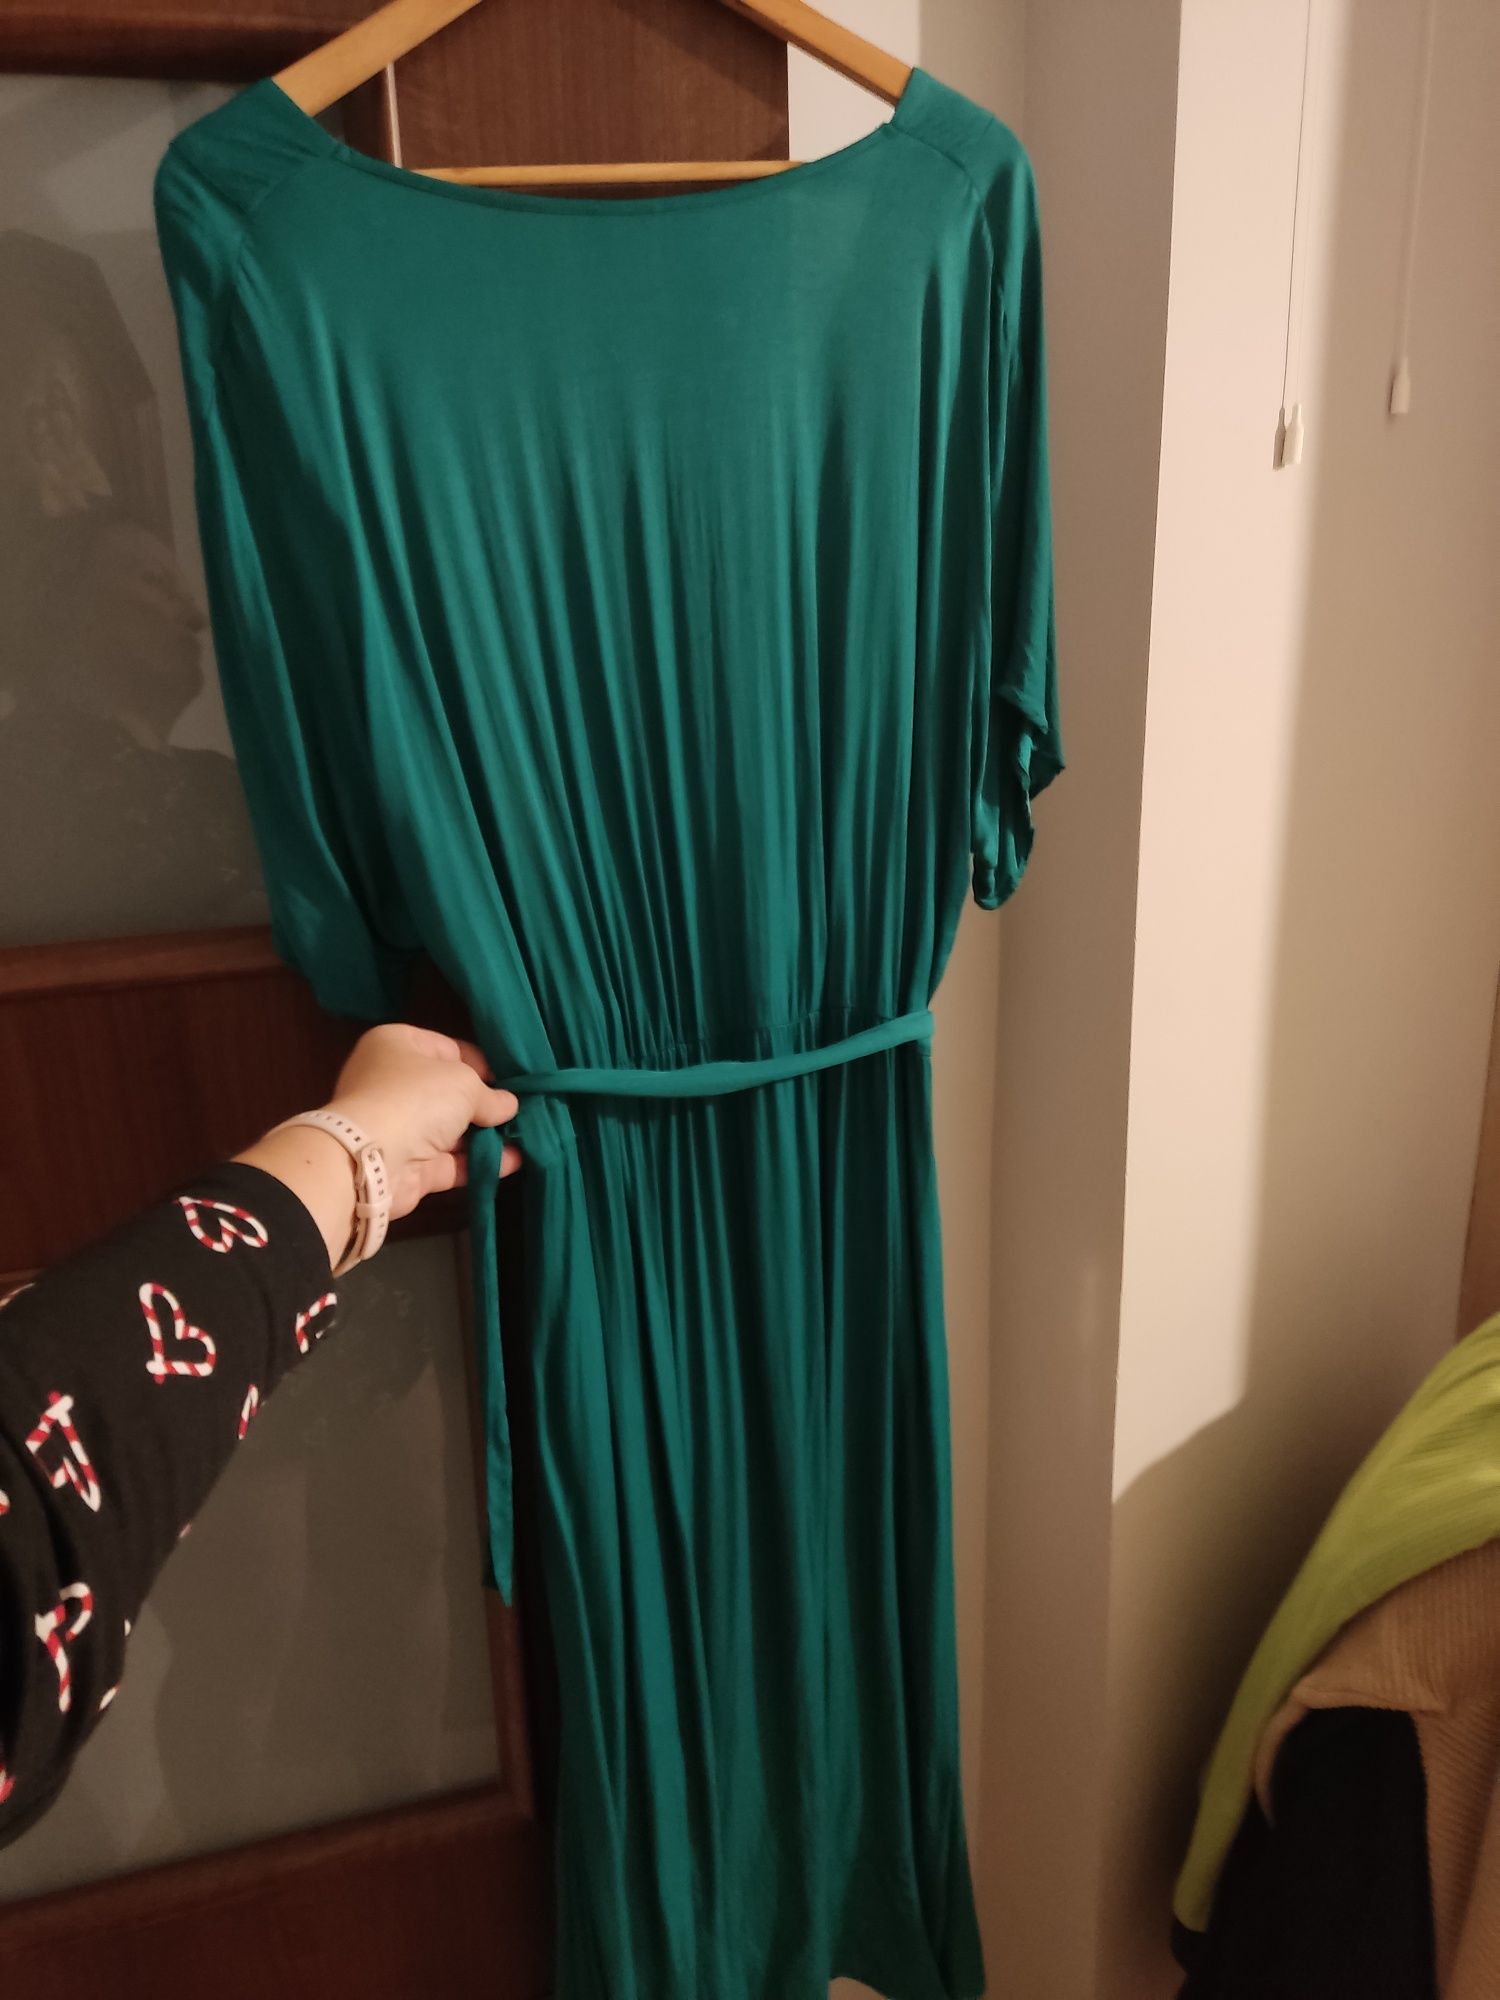 Sukienka midi zielona piękna w optyce statyny bonprinx 44 bdb